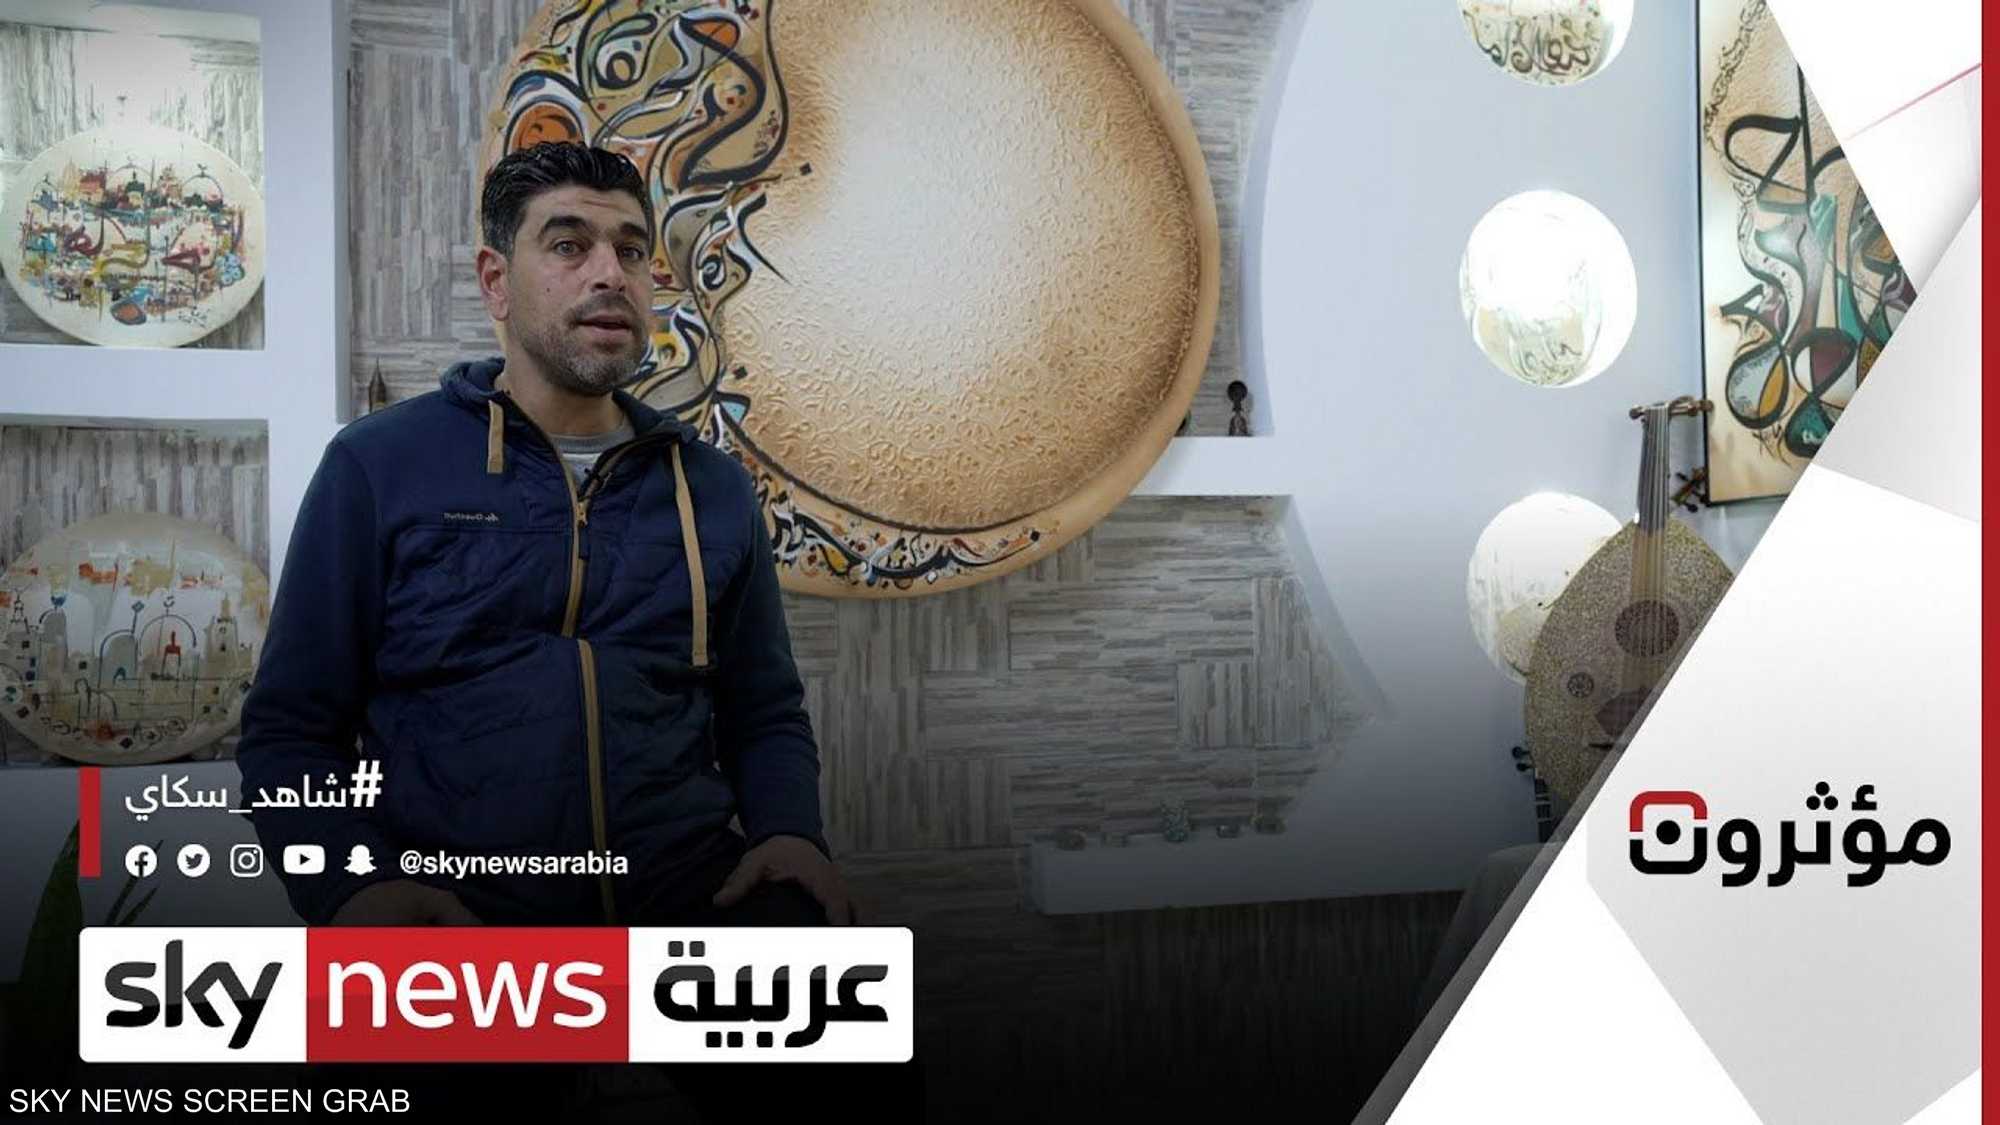 كيف استطاع الفنان صفوان ميلاد نقل الحرف العربي إلى العالم؟